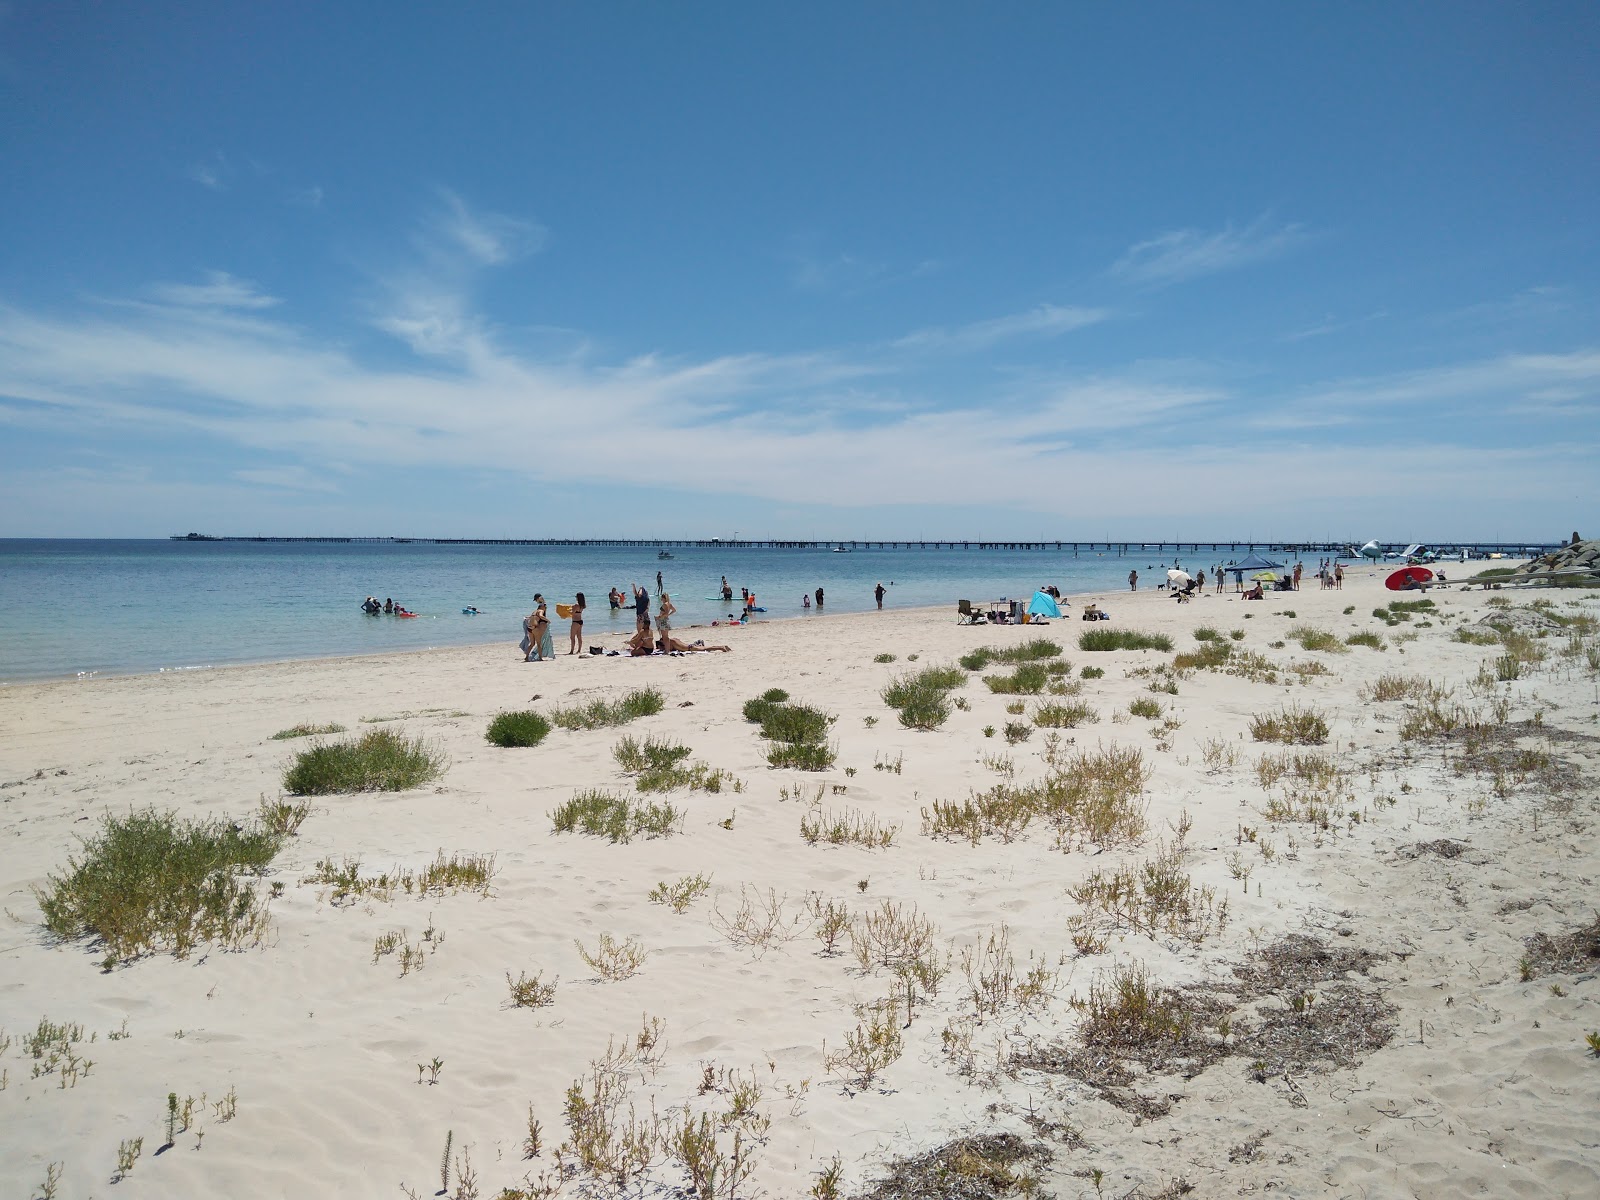 Foto di Geographe Bay con una superficie del sabbia fine e luminosa